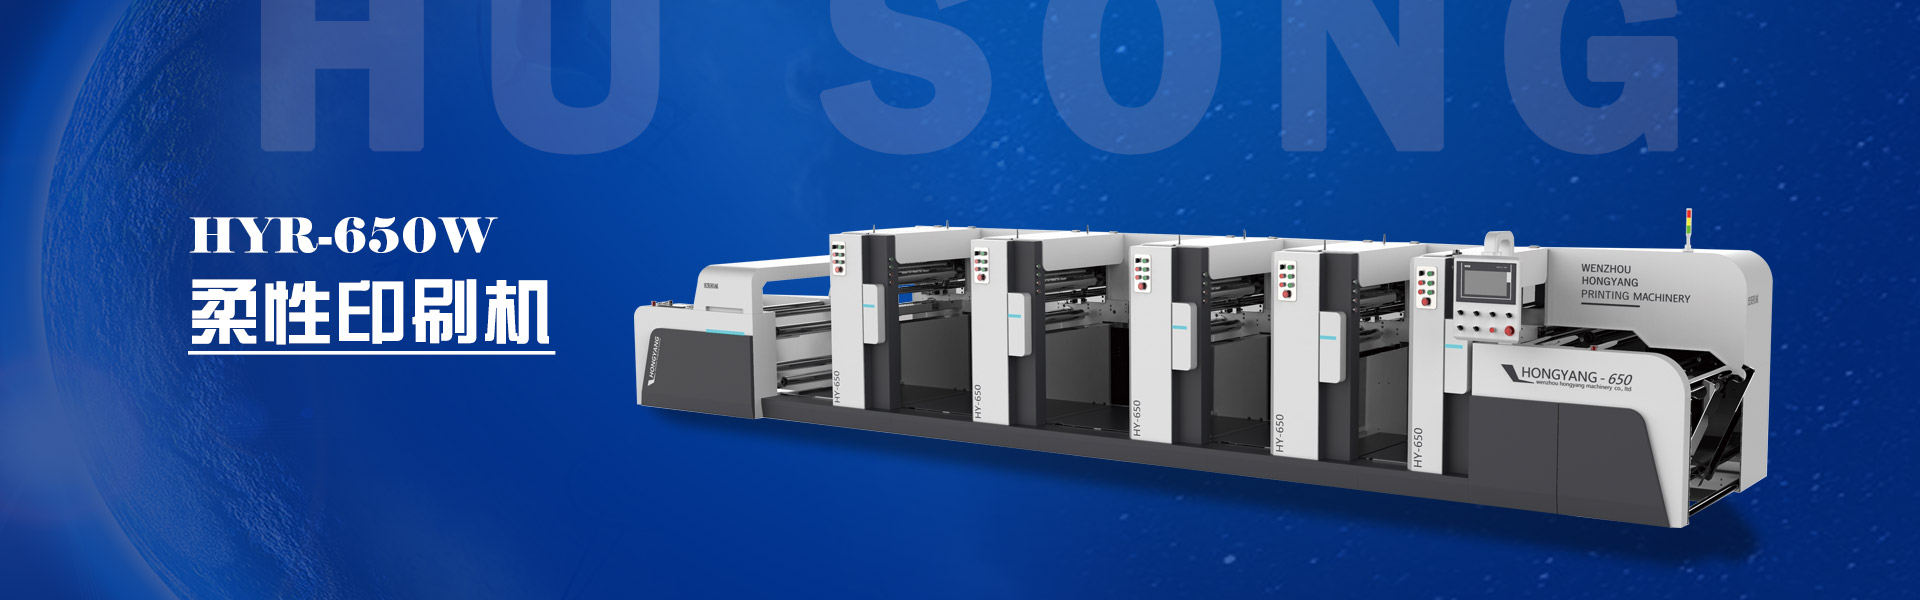 HYR-650W-柔性版印刷机